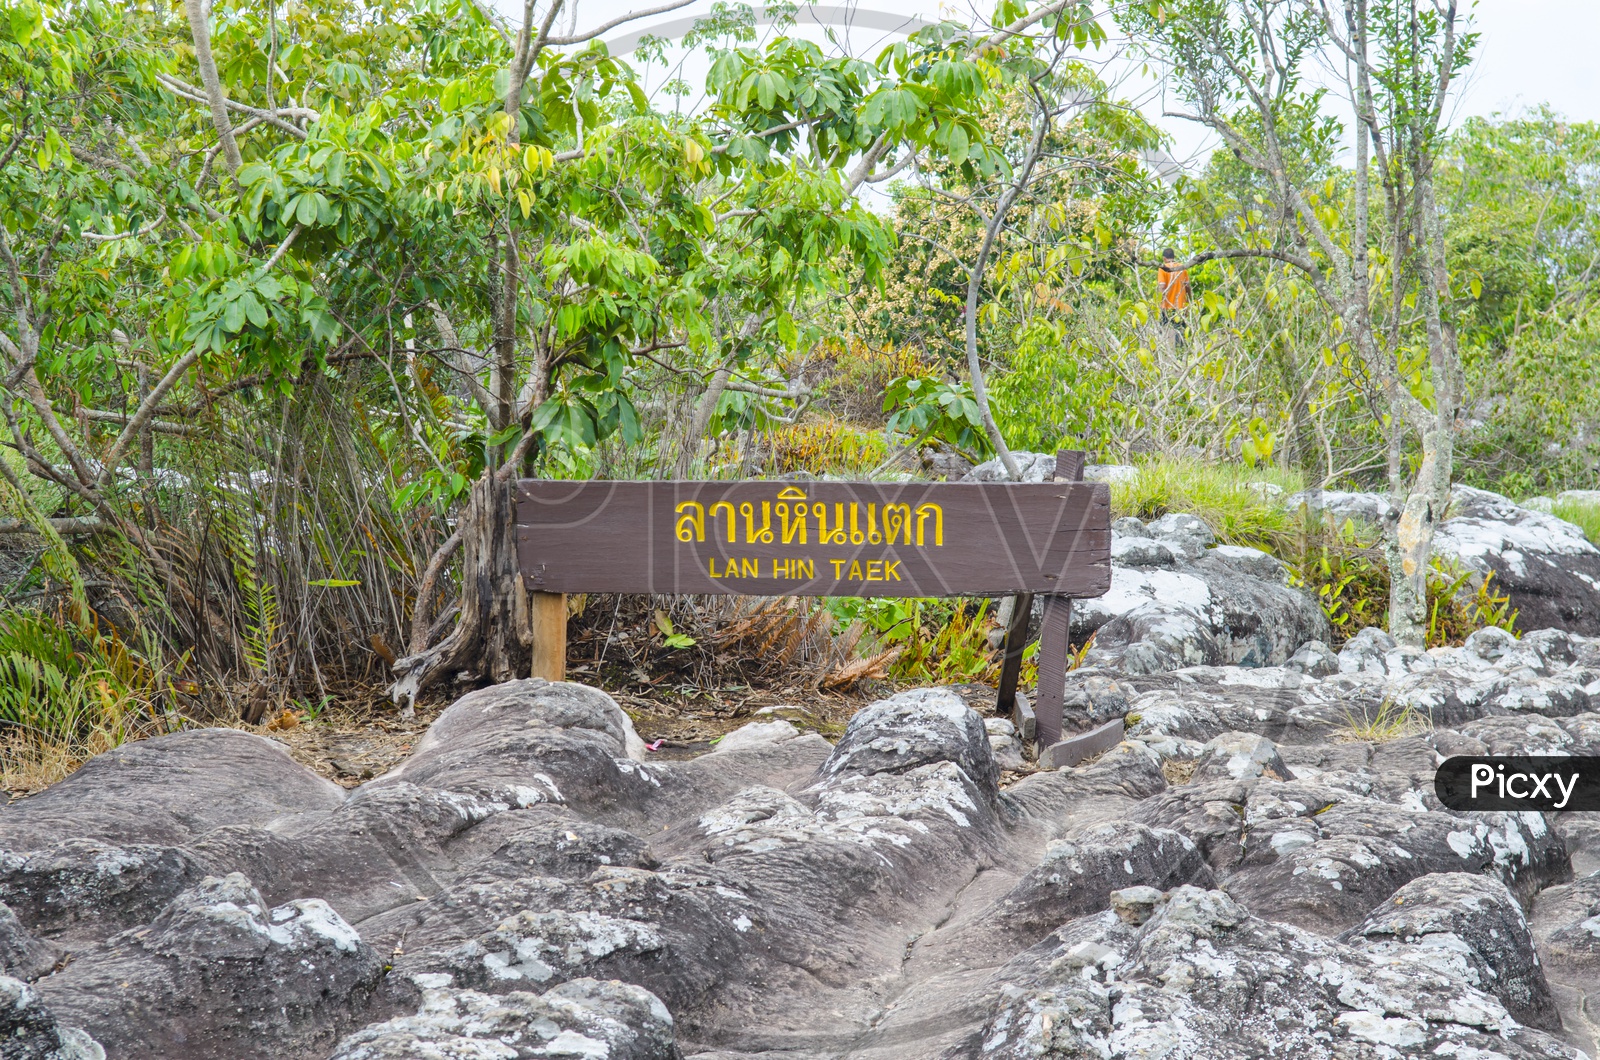 Lan Hin Taek at Phu Hin Rong Kla national park in Thailand